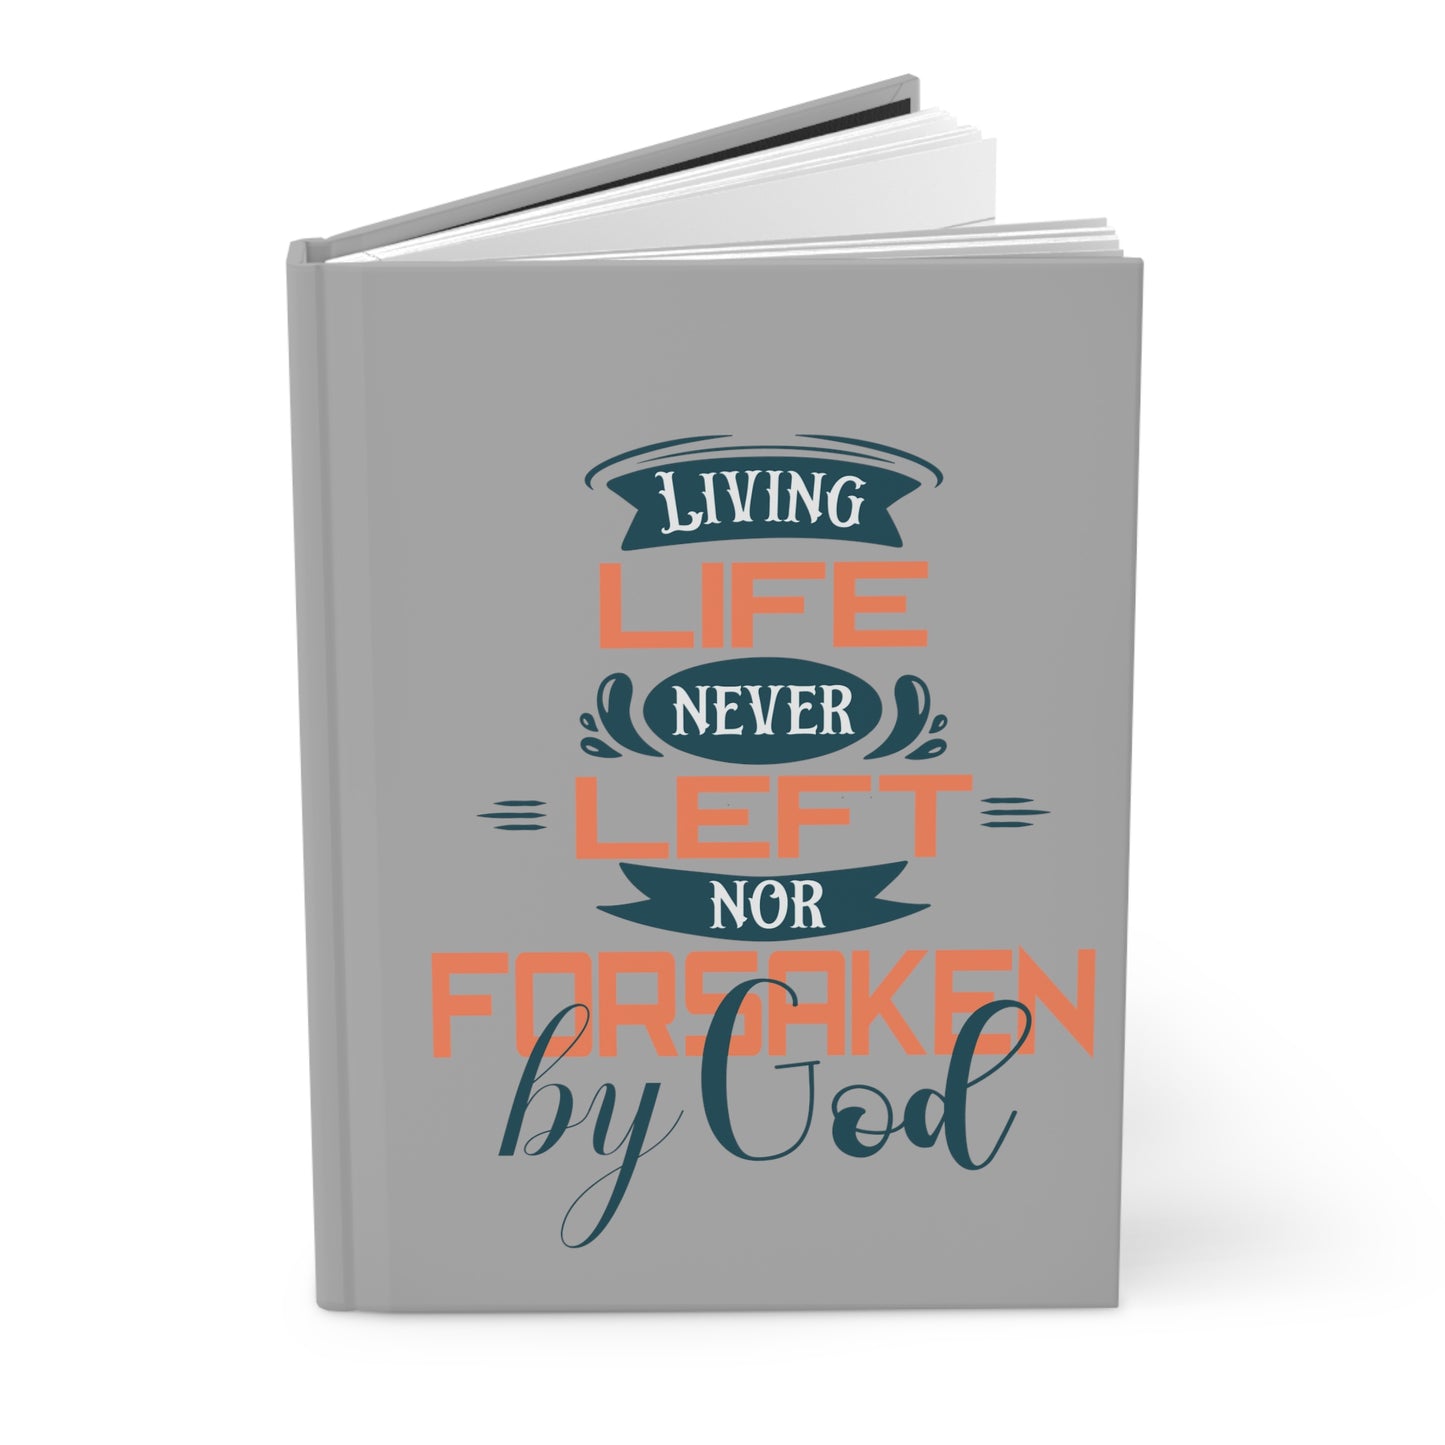 Living Life Never Left Nor Forsaken By God Hardcover Journal Matte